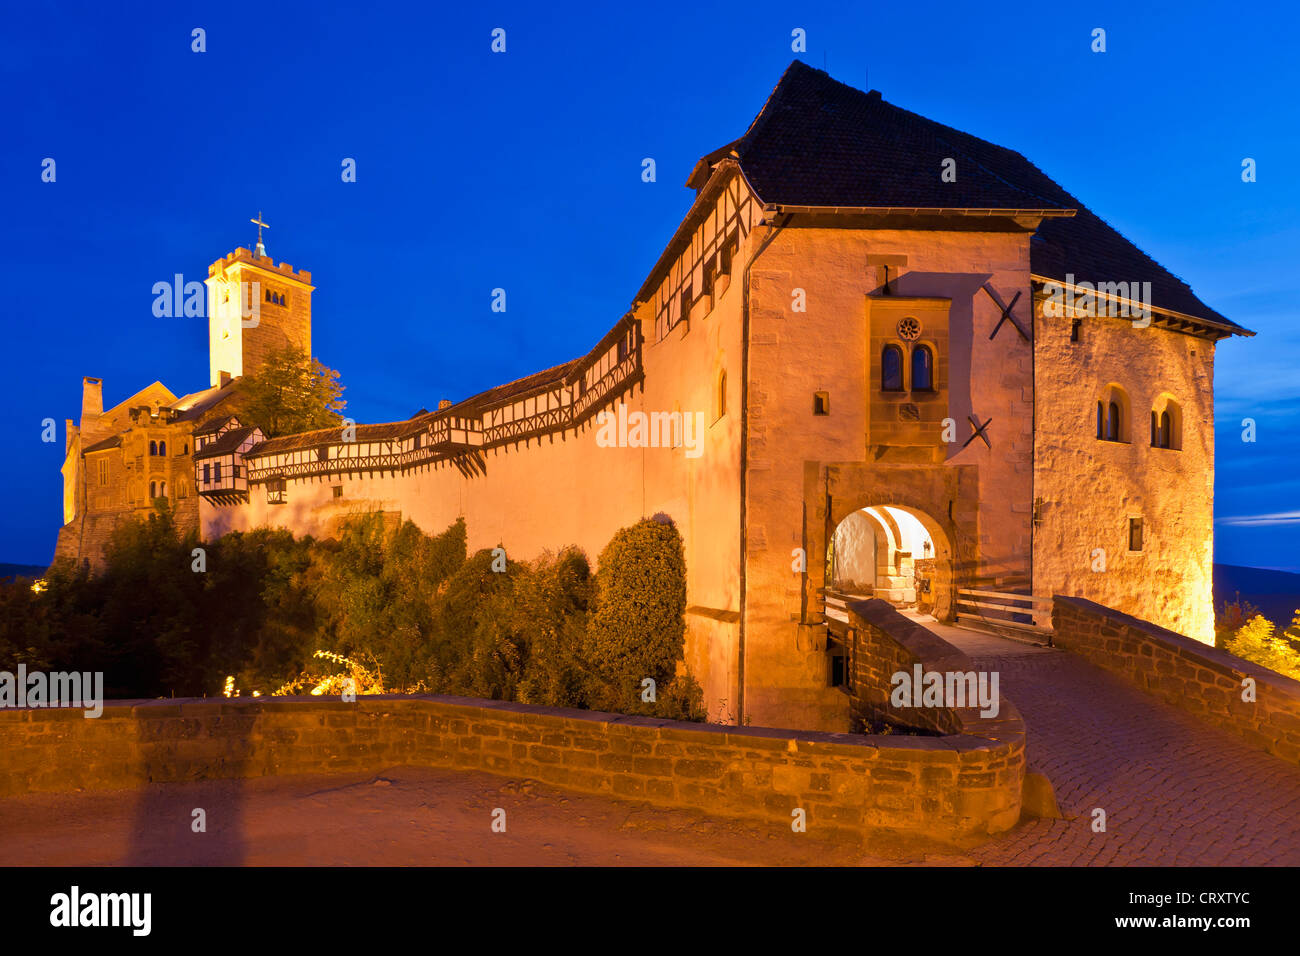 Alemania, Turingia, Eisenach, vista del castillo de Wartburg al atardecer Foto de stock